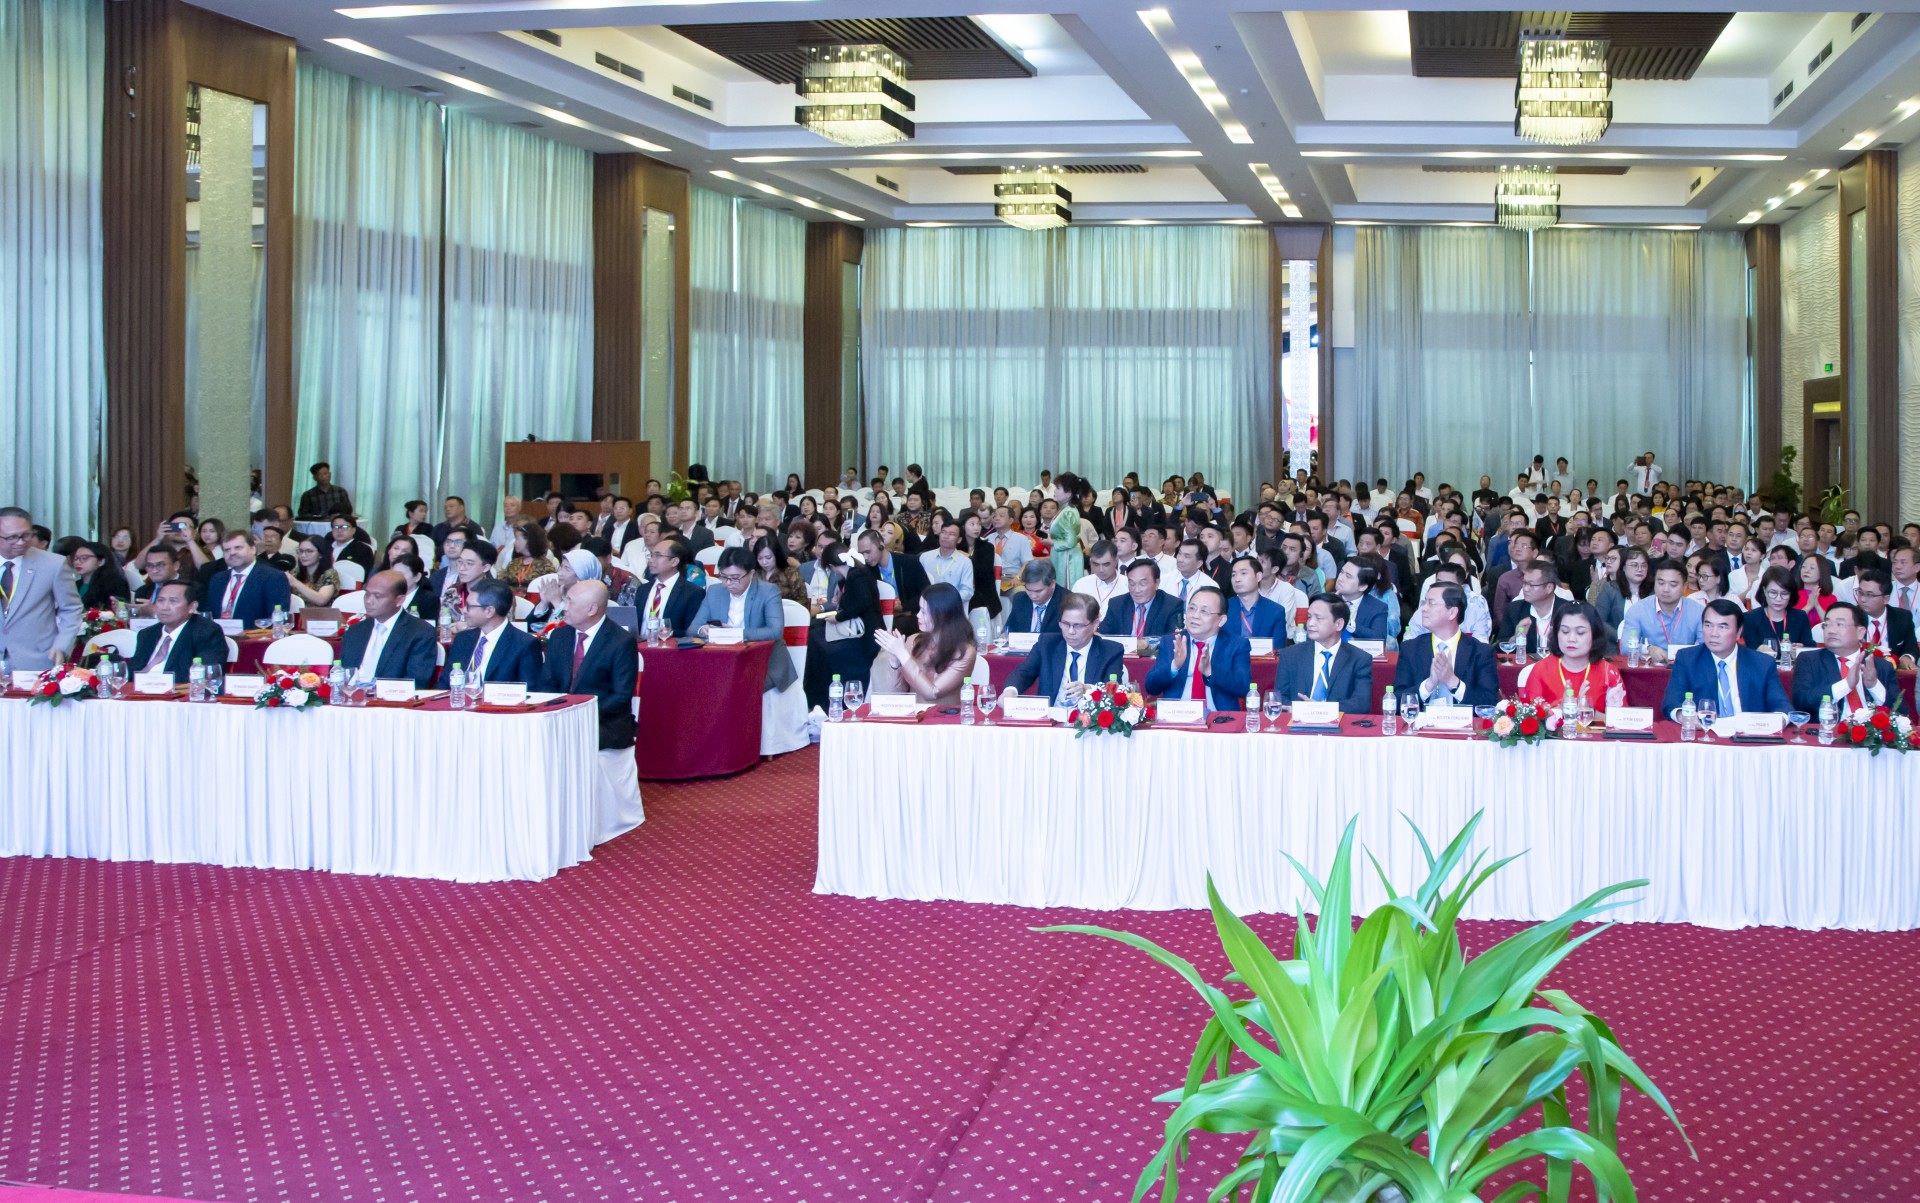 Hội nghị gặp gỡ Indonesia năm 2024 diễn ra tại thành phố Nha Trang (tỉnh Khánh Hòa). (Ảnh: Báo Khánh Hòa)